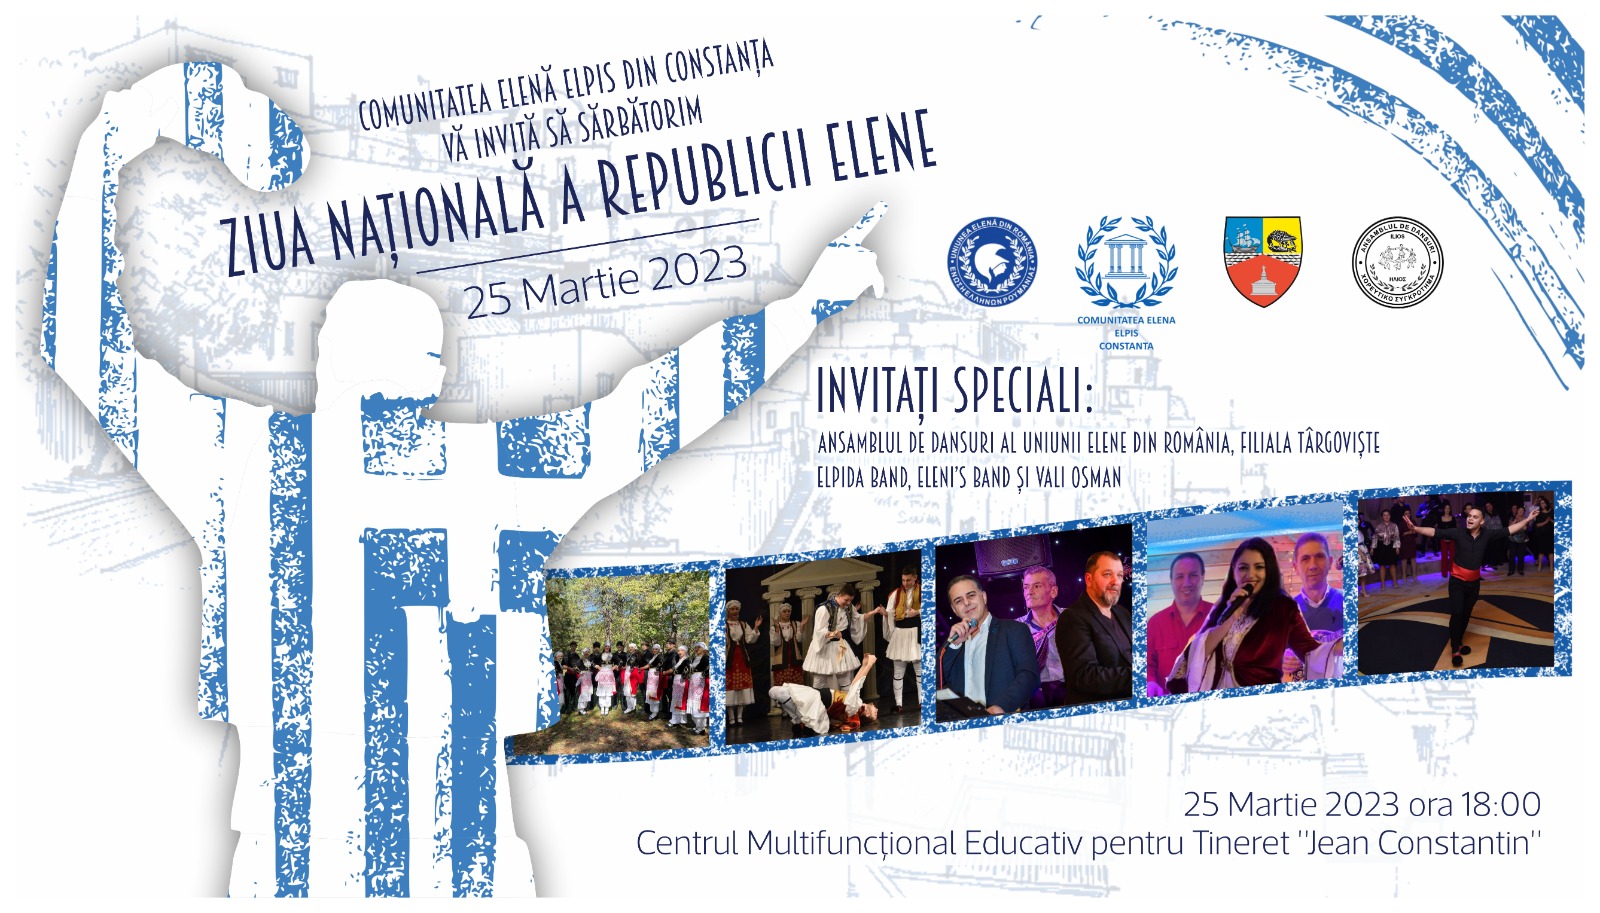 Programul evenimentelor organizate de Ziua Națională a Republicii Elene - f9cecb9b5d264fd48a09c7d4c3ed985b-1679318248.jpg